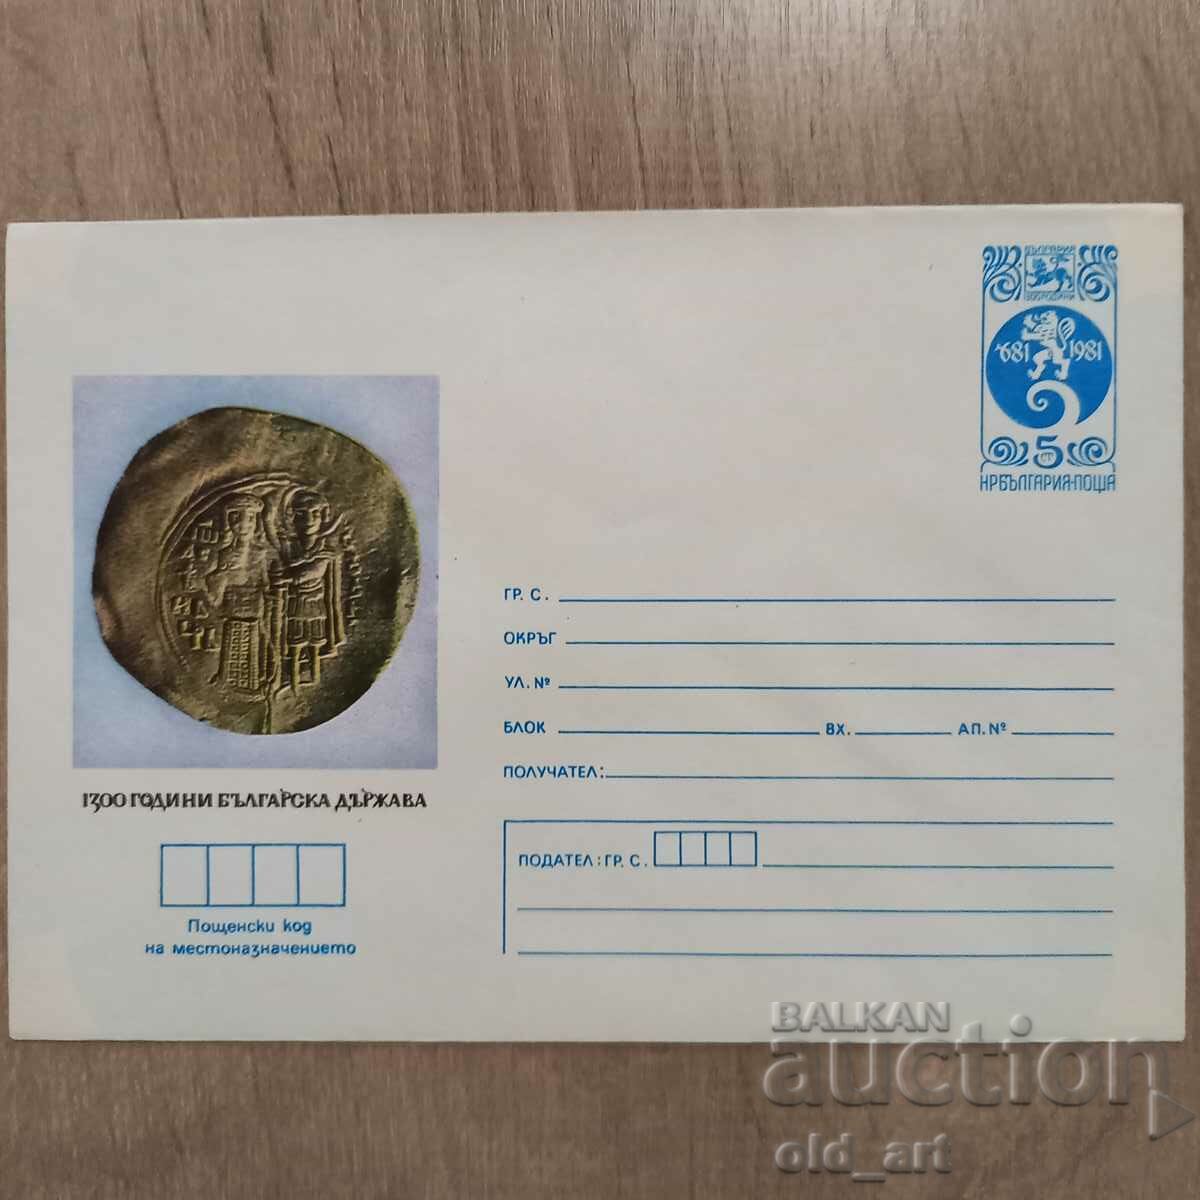 Plic postal - 1300. Statul bulgar